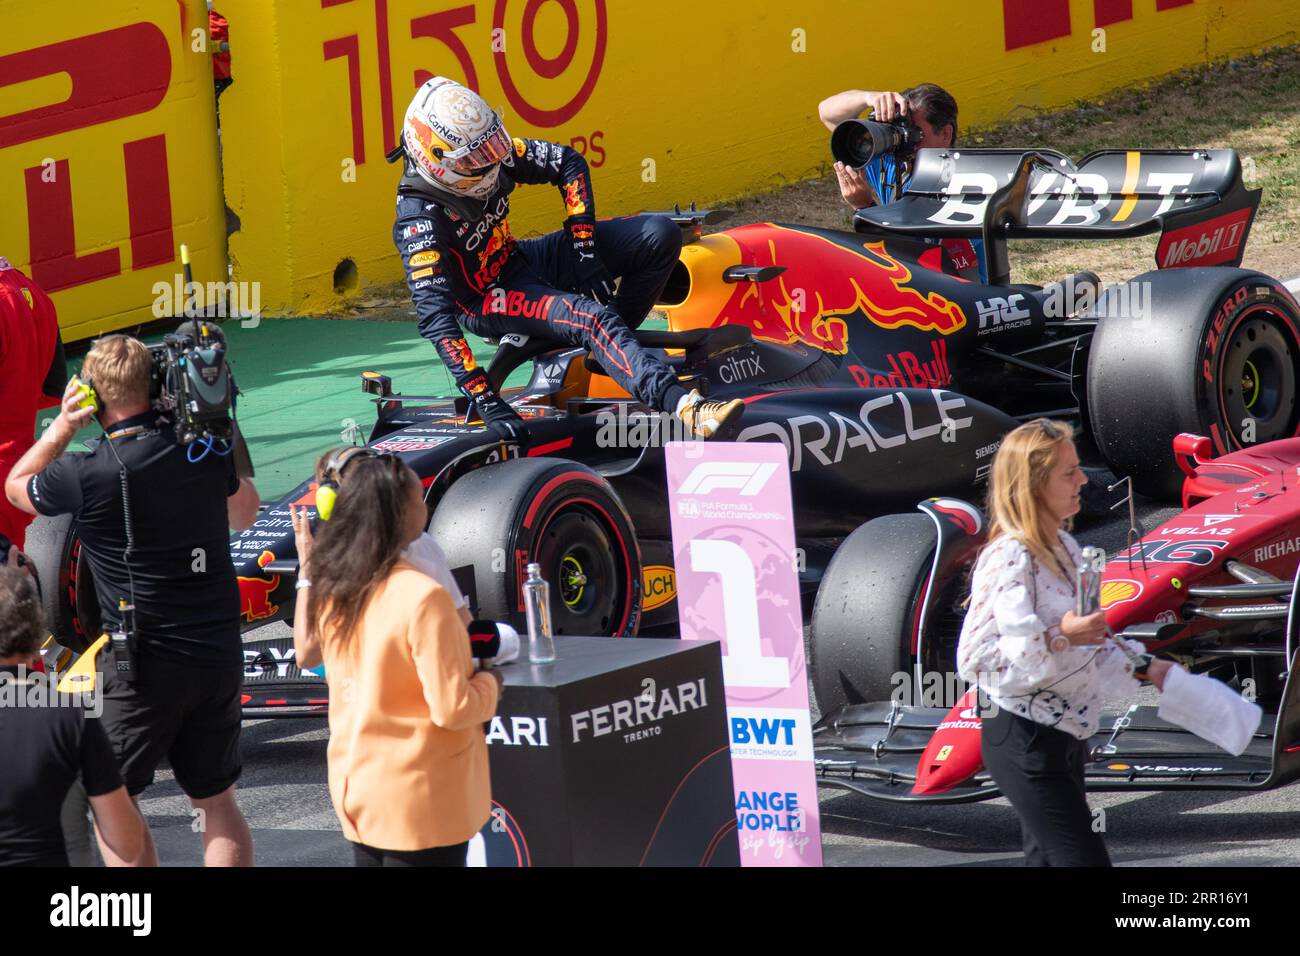 Max Verstappen springt aus seinem Red Bull Racing Car, nachdem er sich den zweiten Platz in der Qualifikationsrunde gesichert hat. Stockfoto